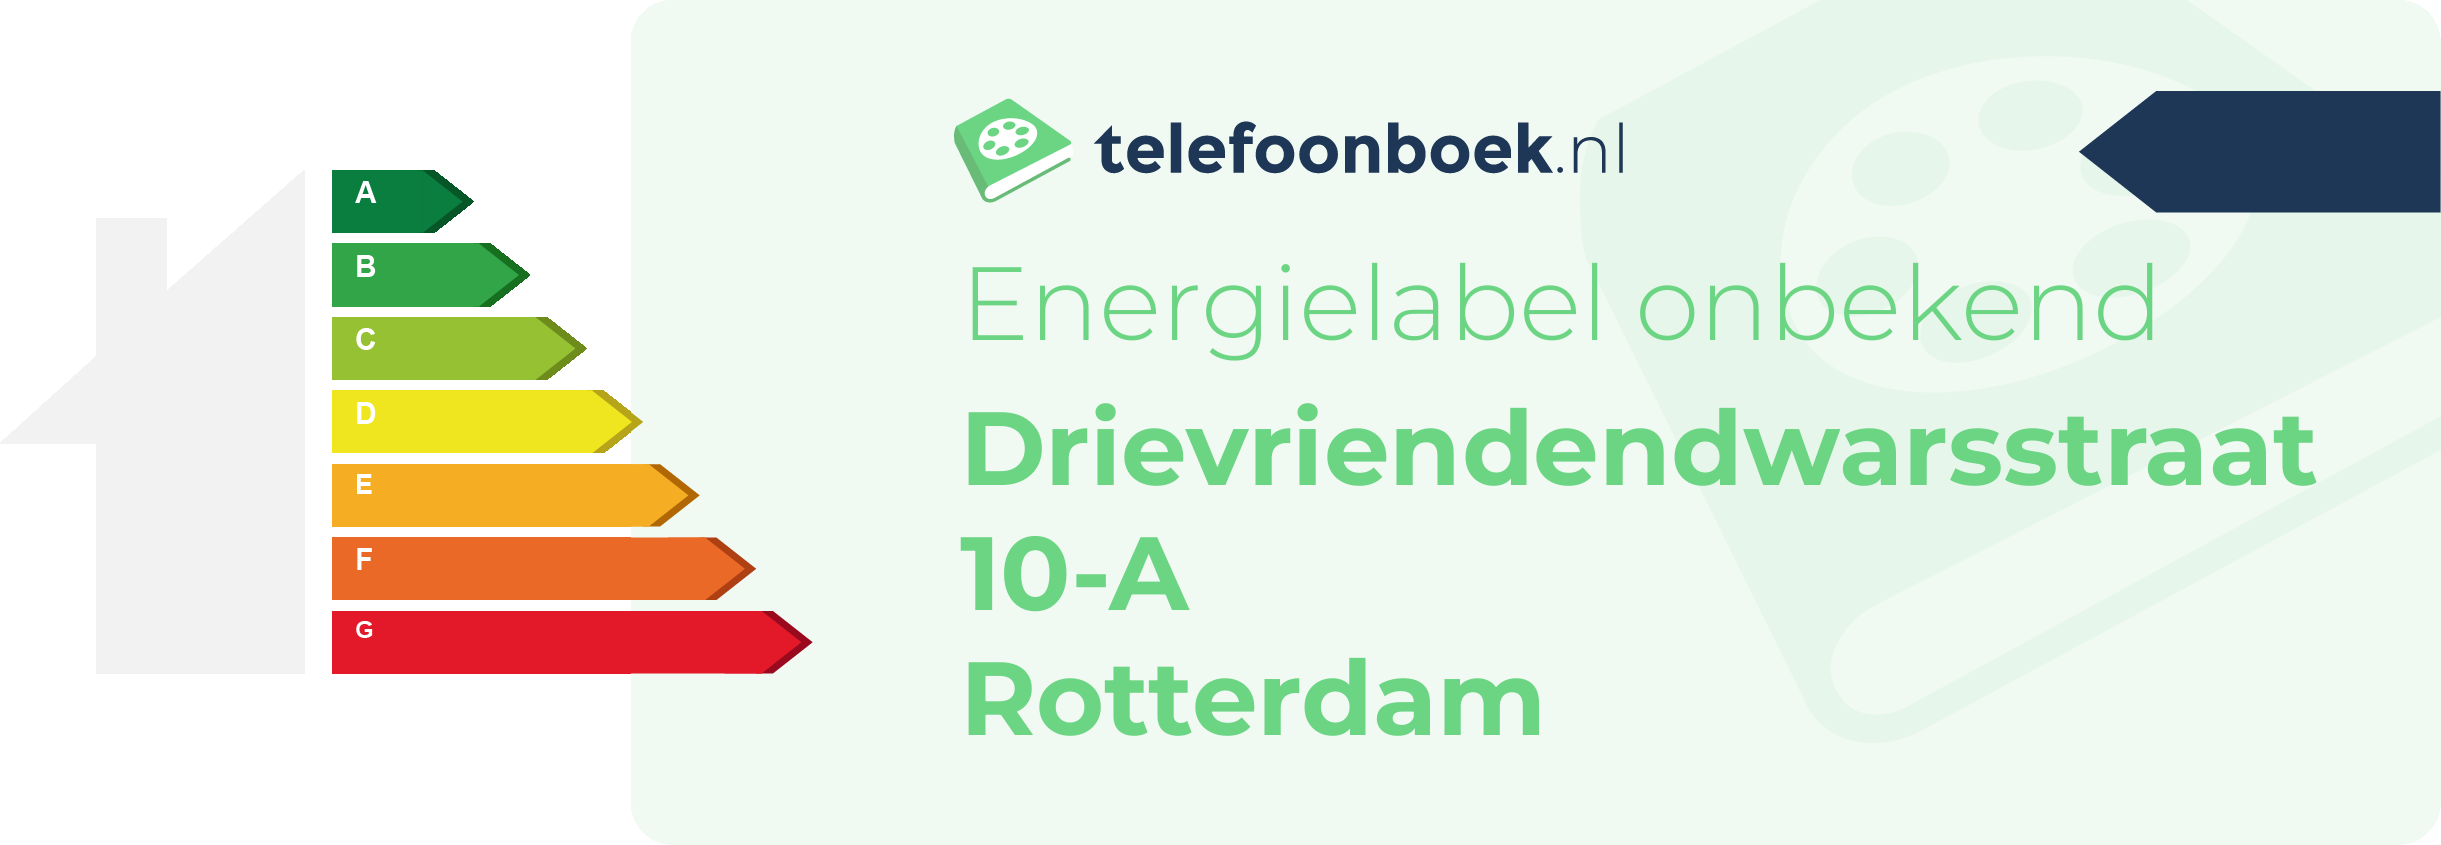 Energielabel Drievriendendwarsstraat 10-A Rotterdam